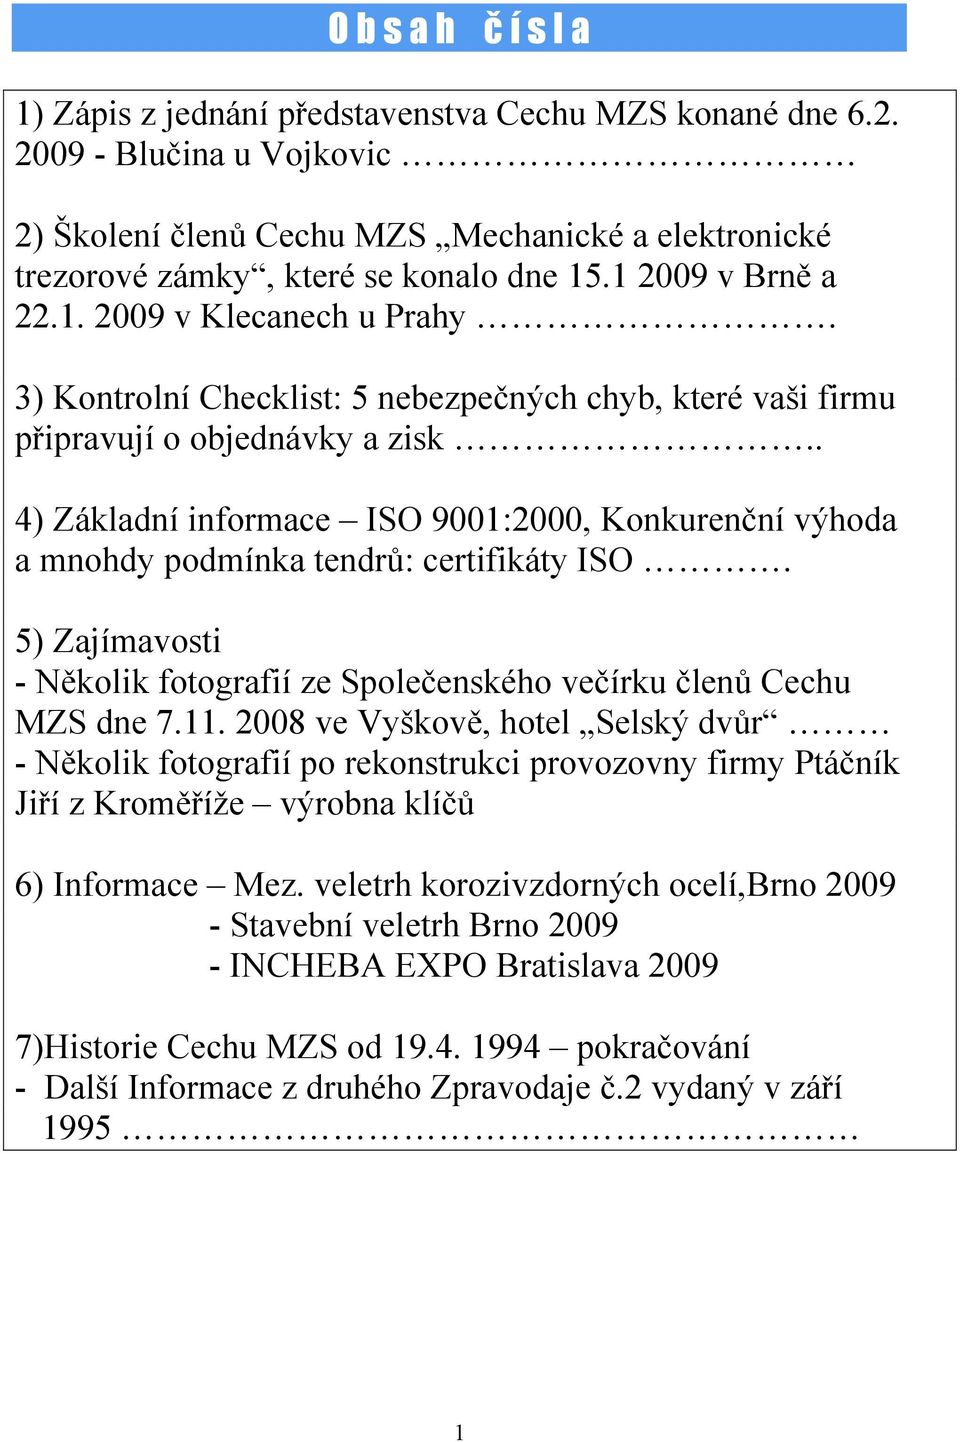 . 4) Základní informace ISO 9001:2000, Konkurenční výhoda a mnohdy podmínka tendrů: certifikáty ISO. 5) Zajímavosti - Několik fotografií ze Společenského večírku členů Cechu MZS dne 7.11.